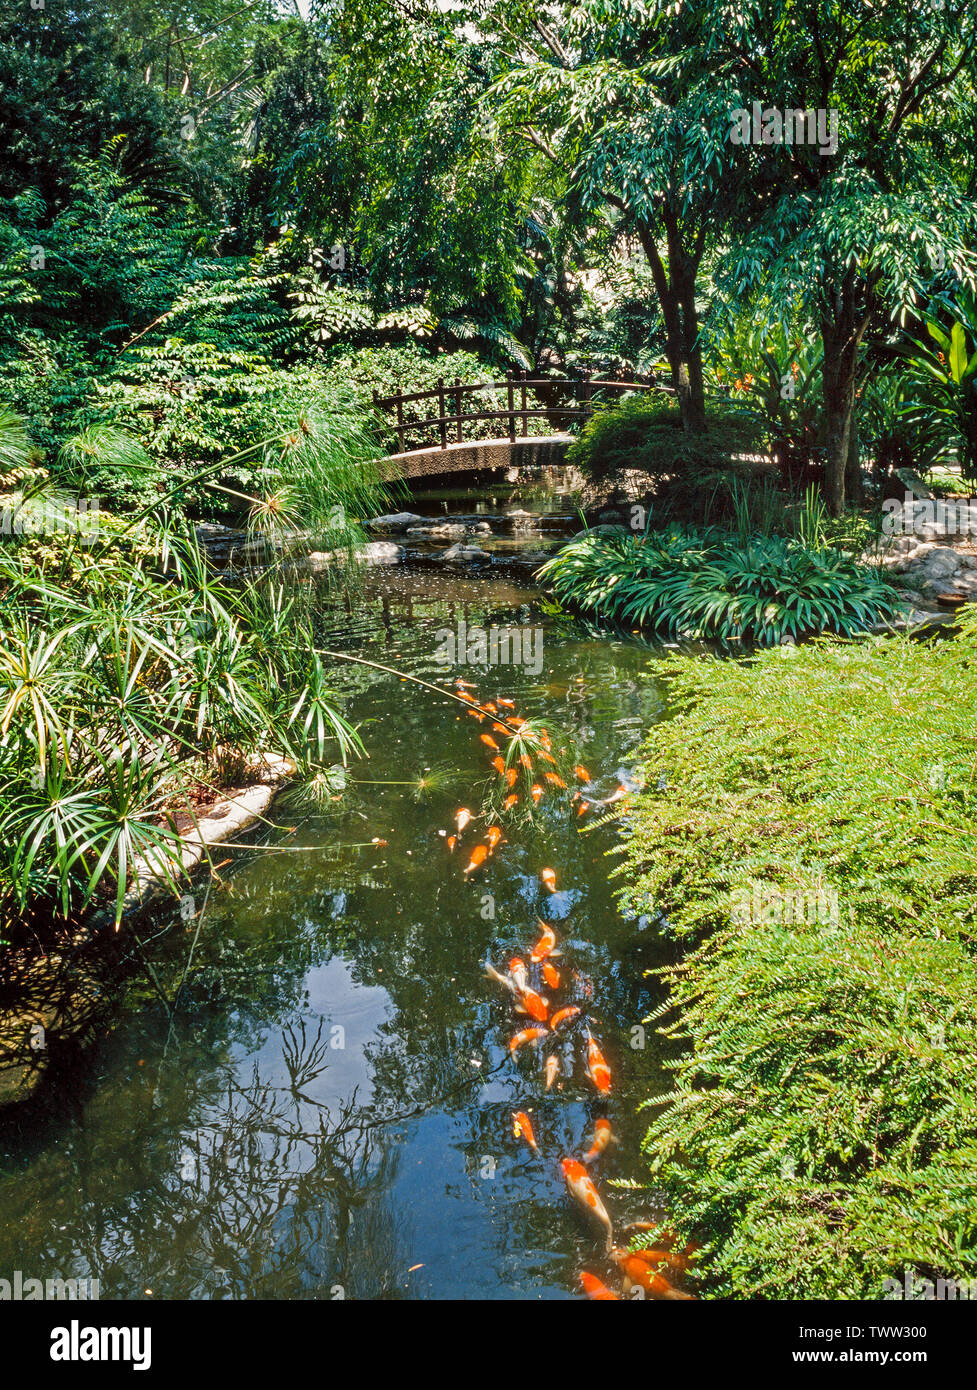 Oriental water garden, stream with Koi fish, Chinese bridge Stock Photo